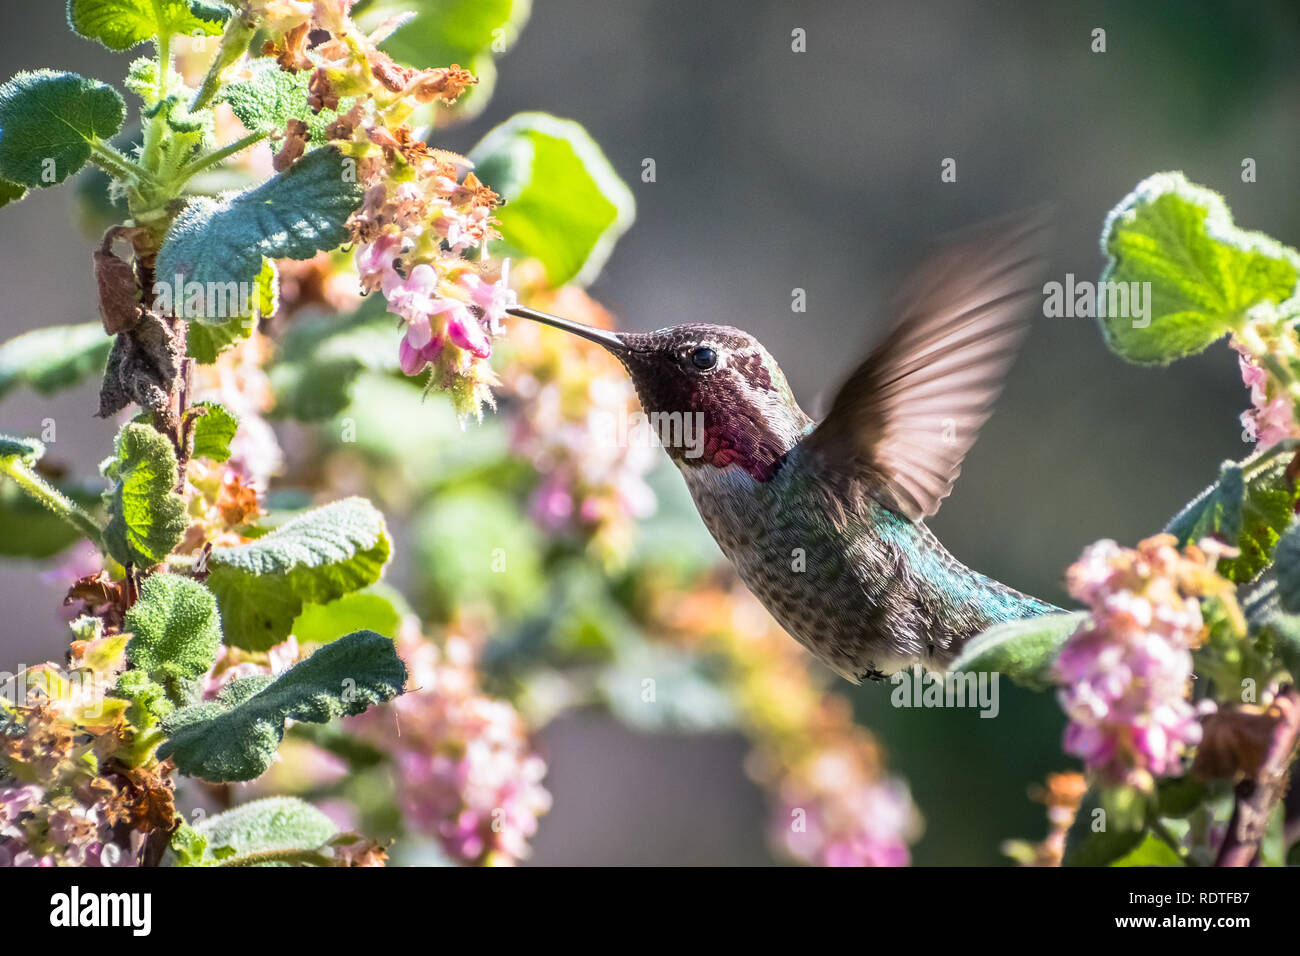 Petite Anna's Hummingbird nectar potable à partir d'un malvaceum Ribes (groseillier Chaparral) fleur, baie de San Francisco, Californie Banque D'Images